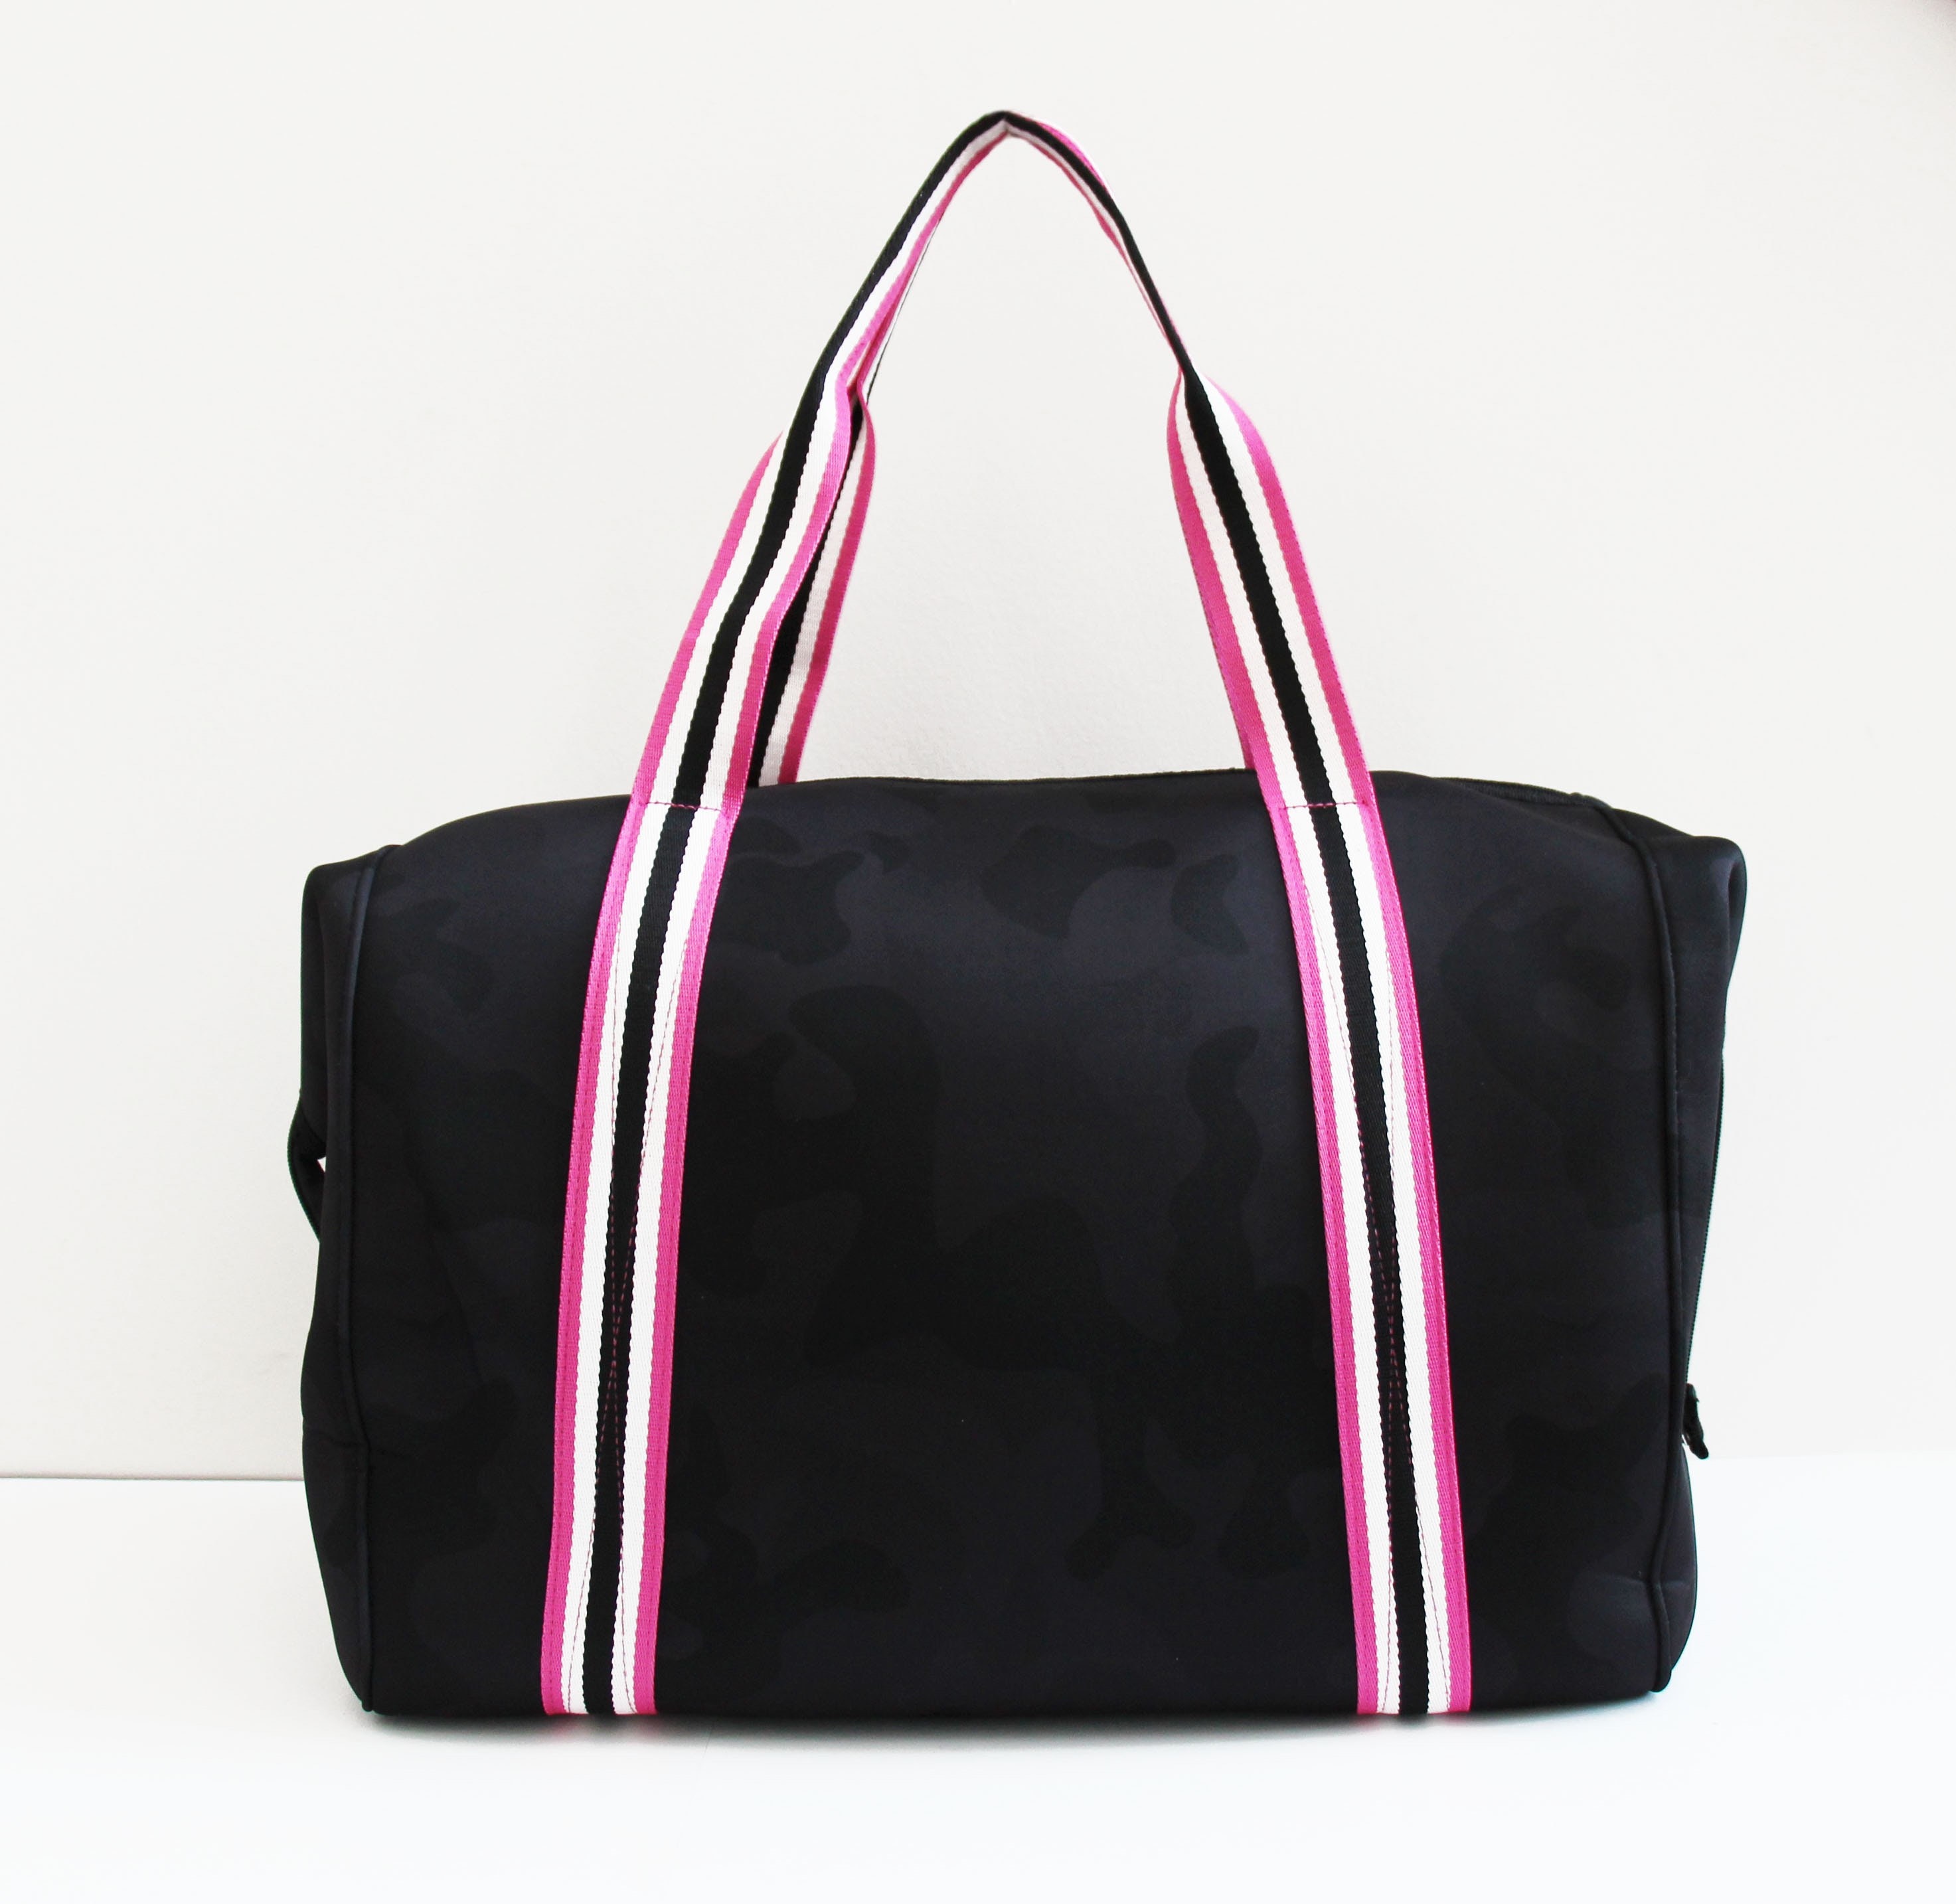 Hirooms Neoprene Tote Bag Multipurpose Beach Bag Travel Shoulder Bag  Waterproof Pool Bag for Women & Men